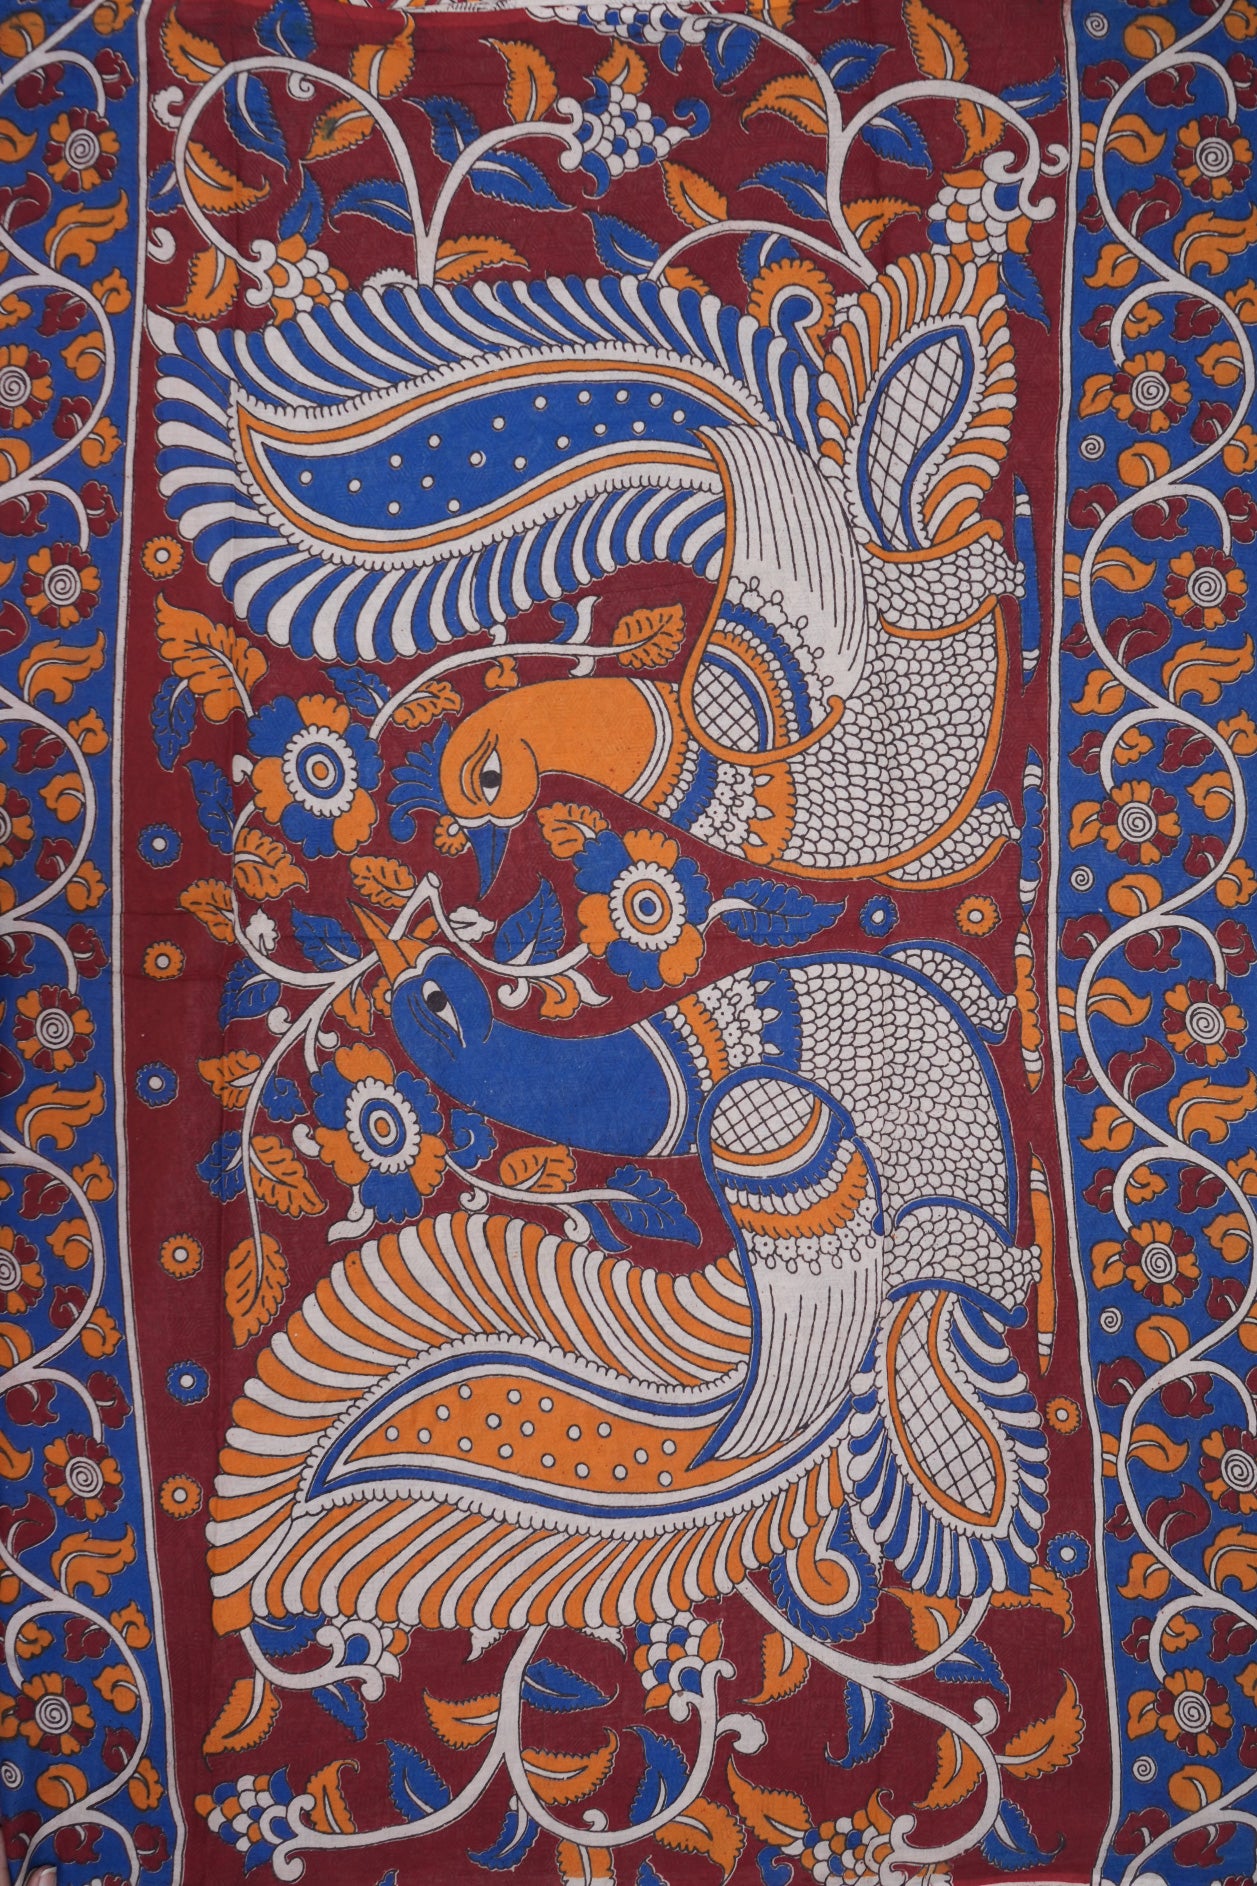 Peacock And Floral Design Tan Brown Printed Kalamkari Cotton Saree